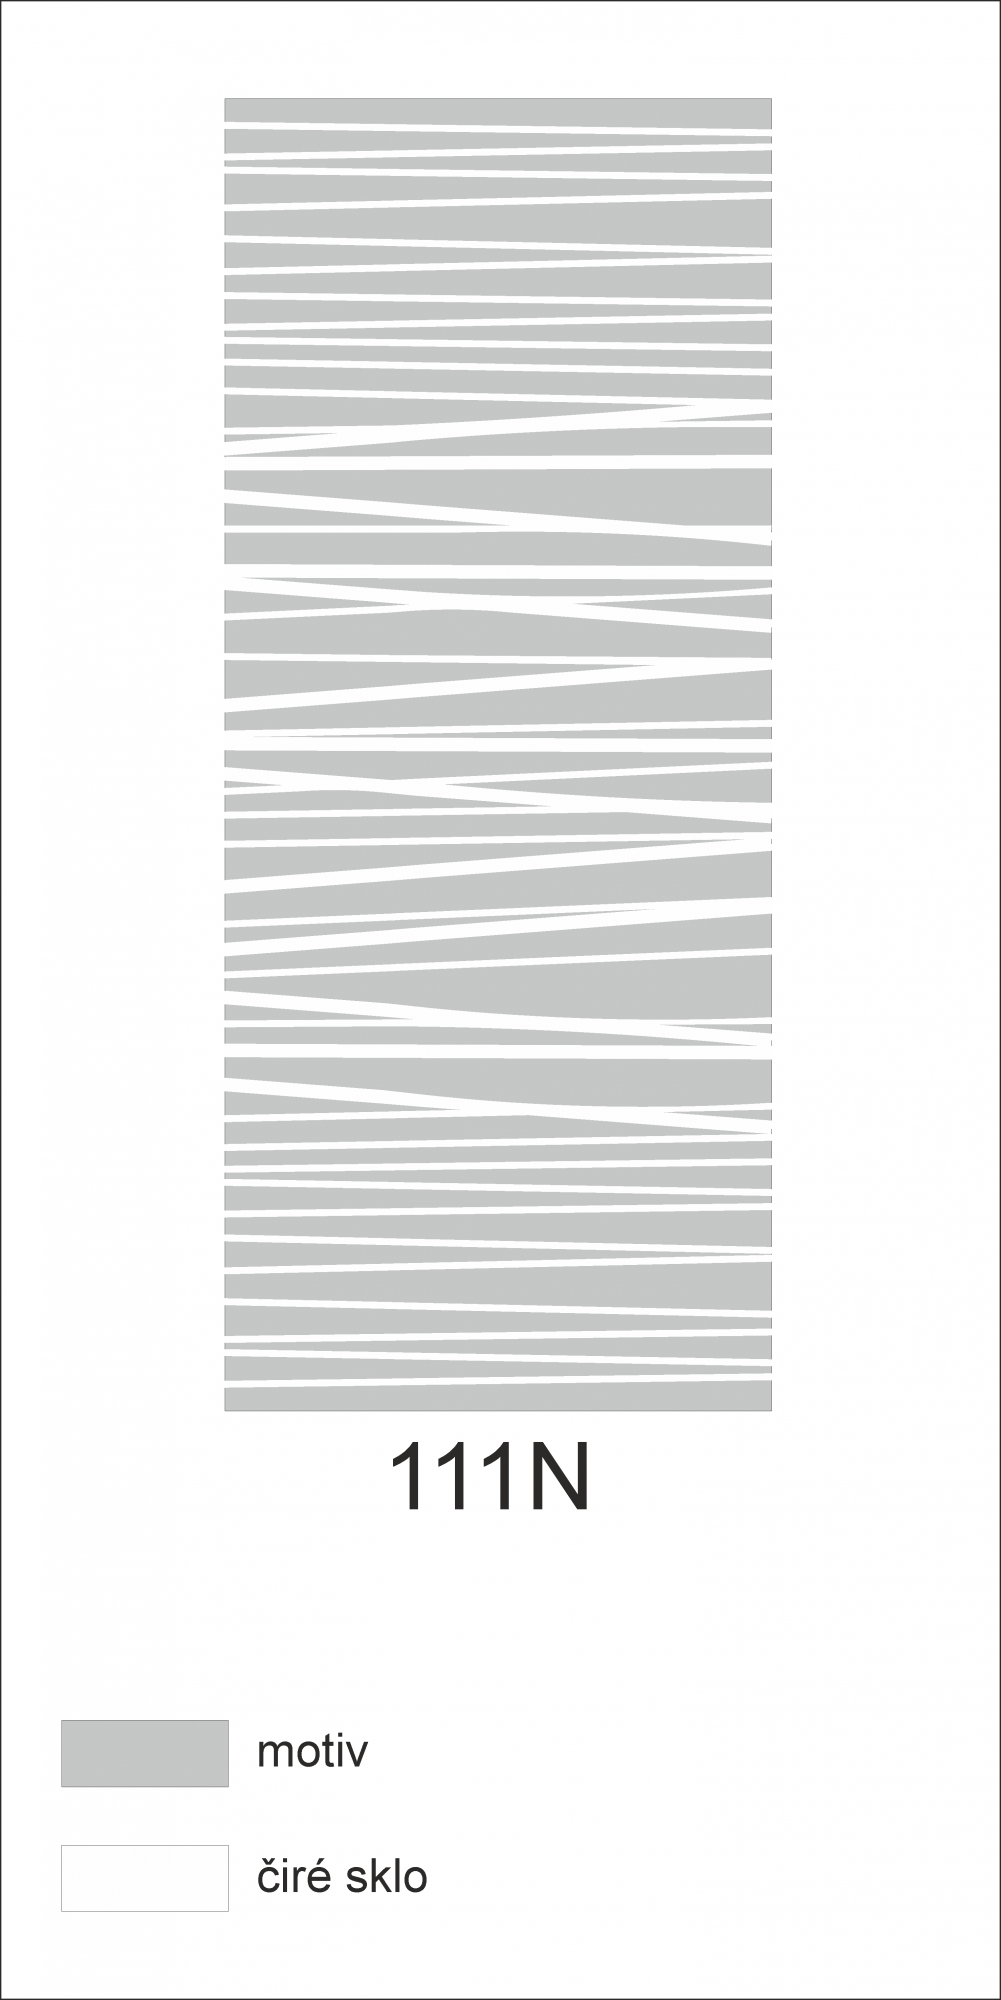 Možný motiv na skleněných dveřích nebo skleněných stěnách 111N - horizontální čáry